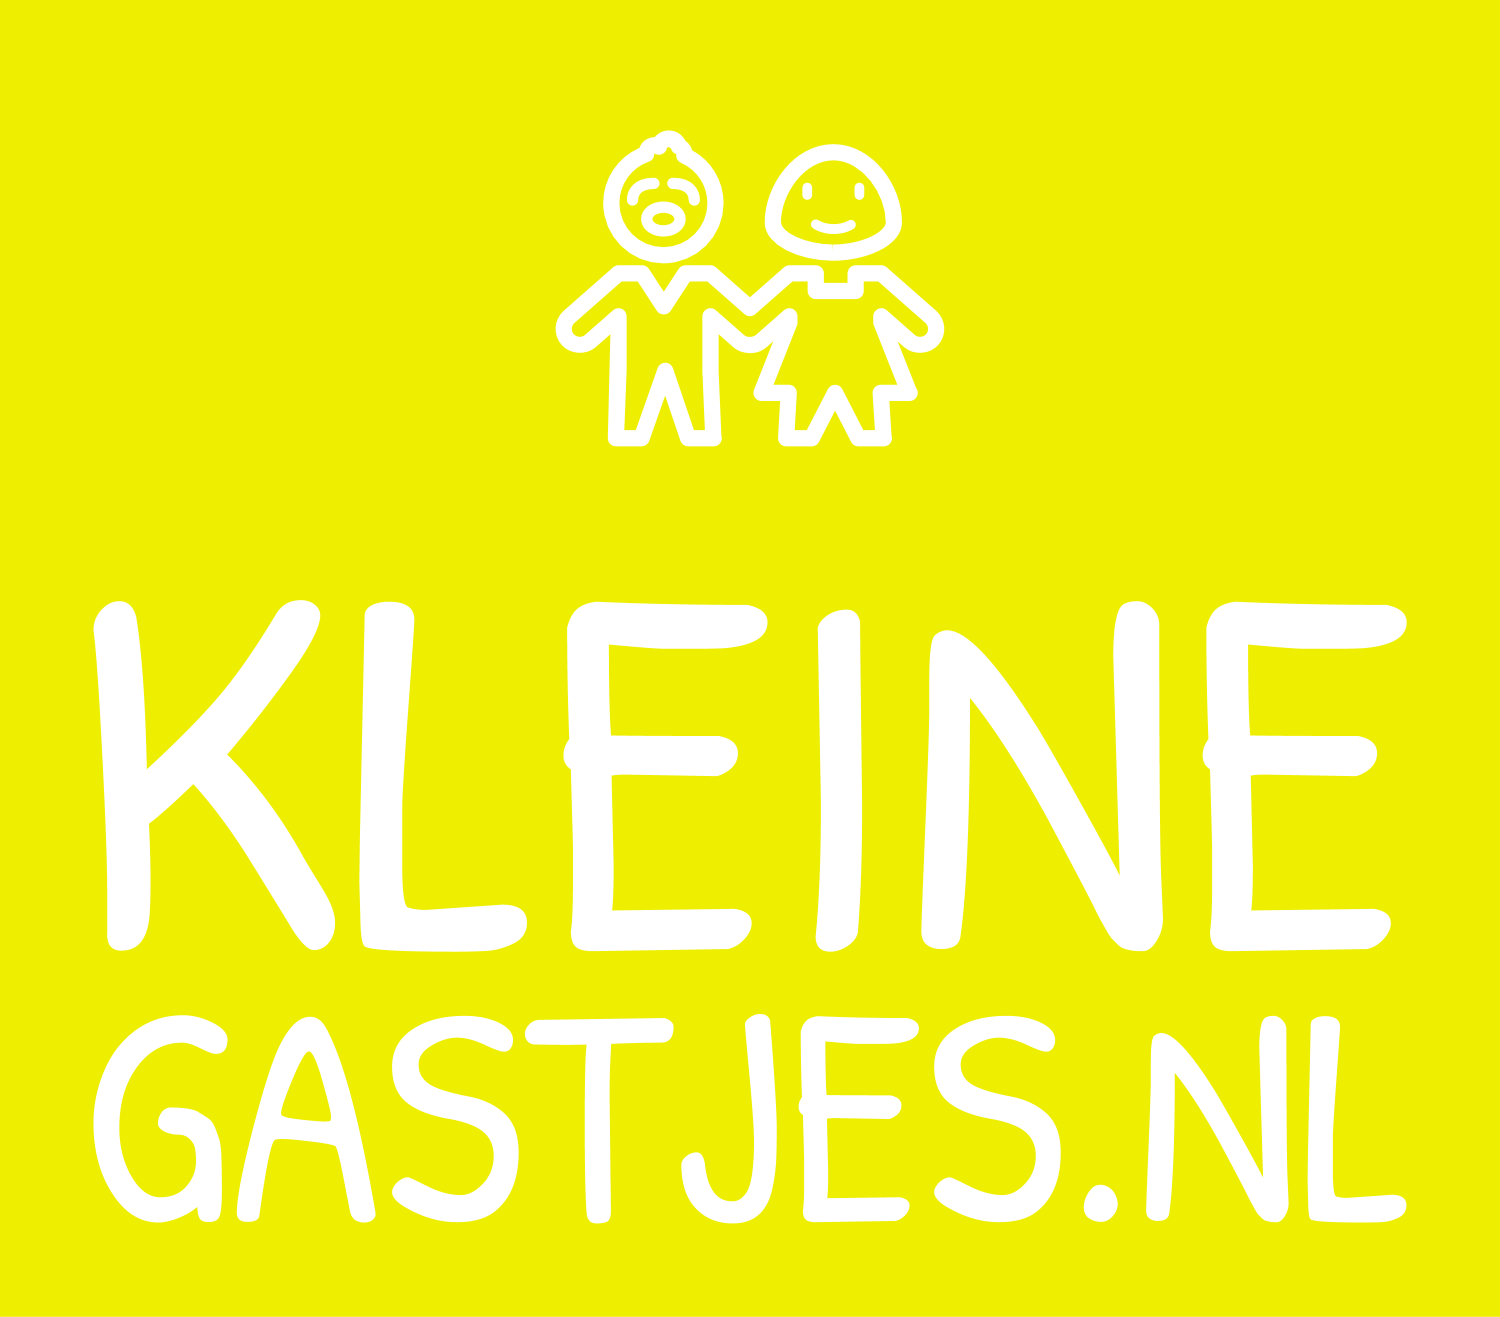 www.kleinegastjes.nl